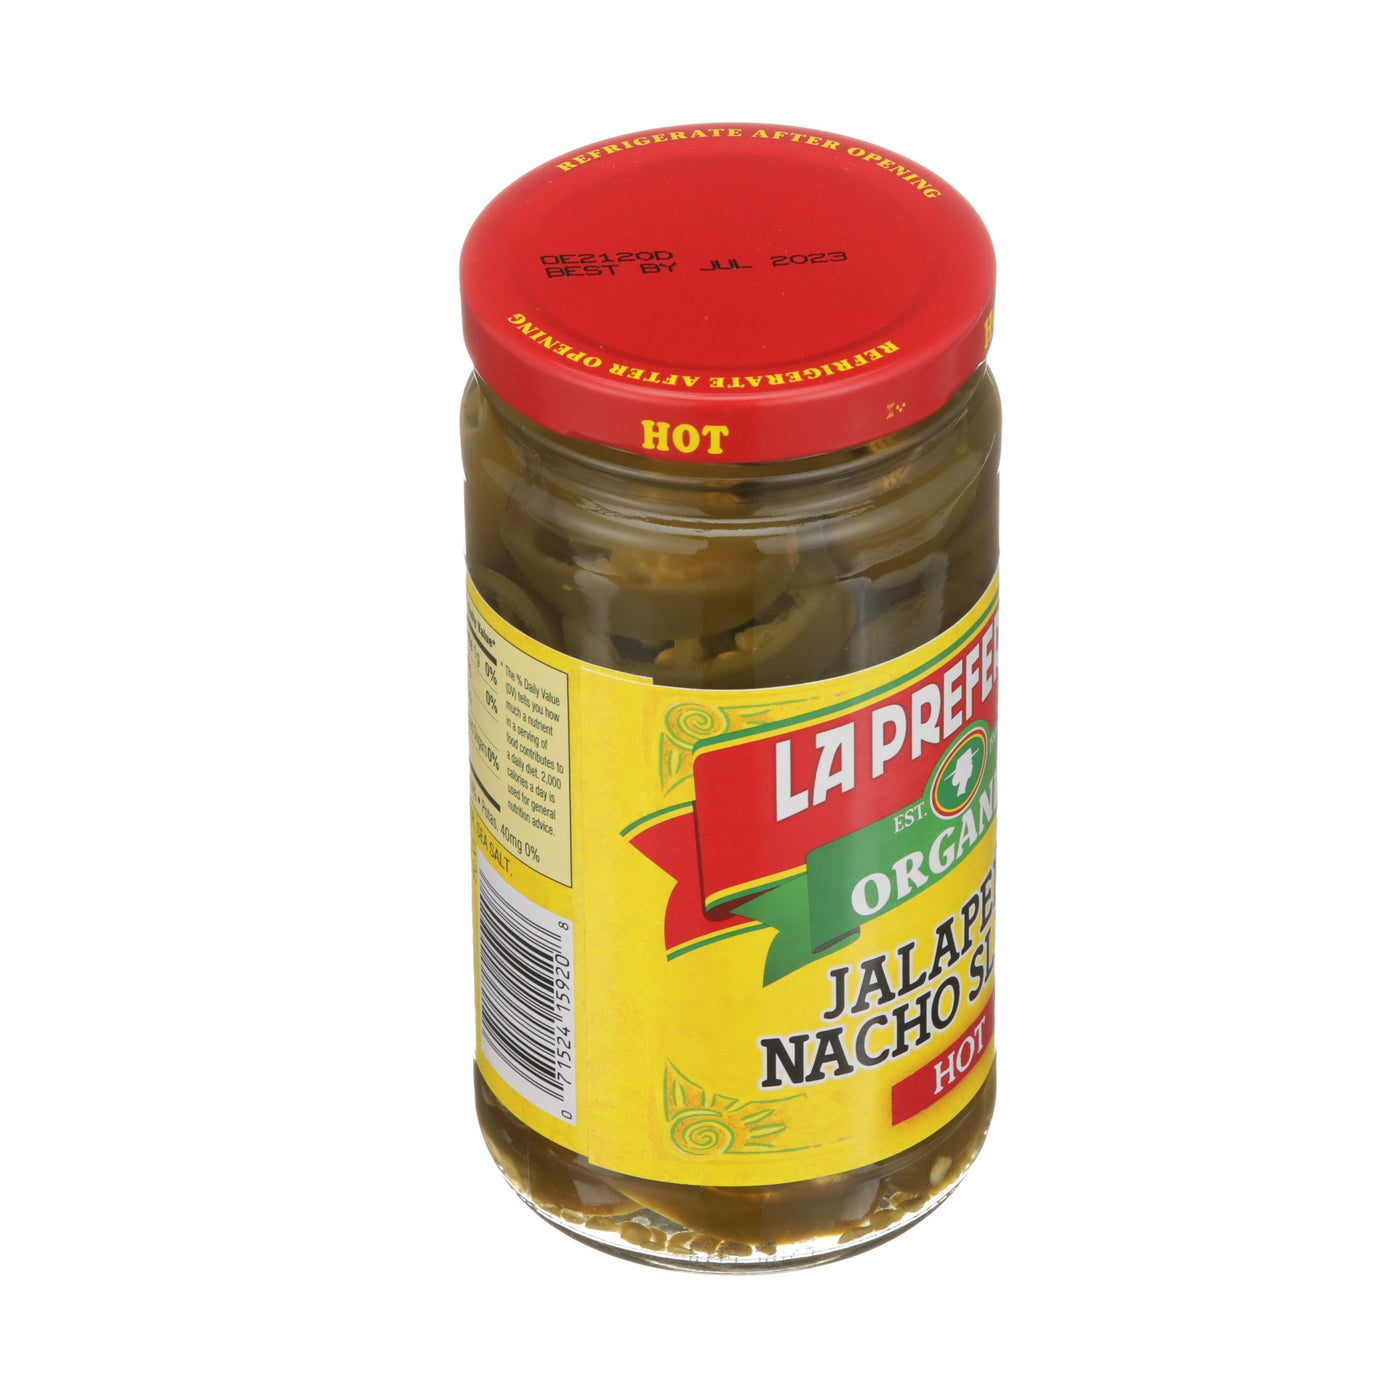 Organic Jalapeno Nacho Slices, Hot , 11.5 OZ